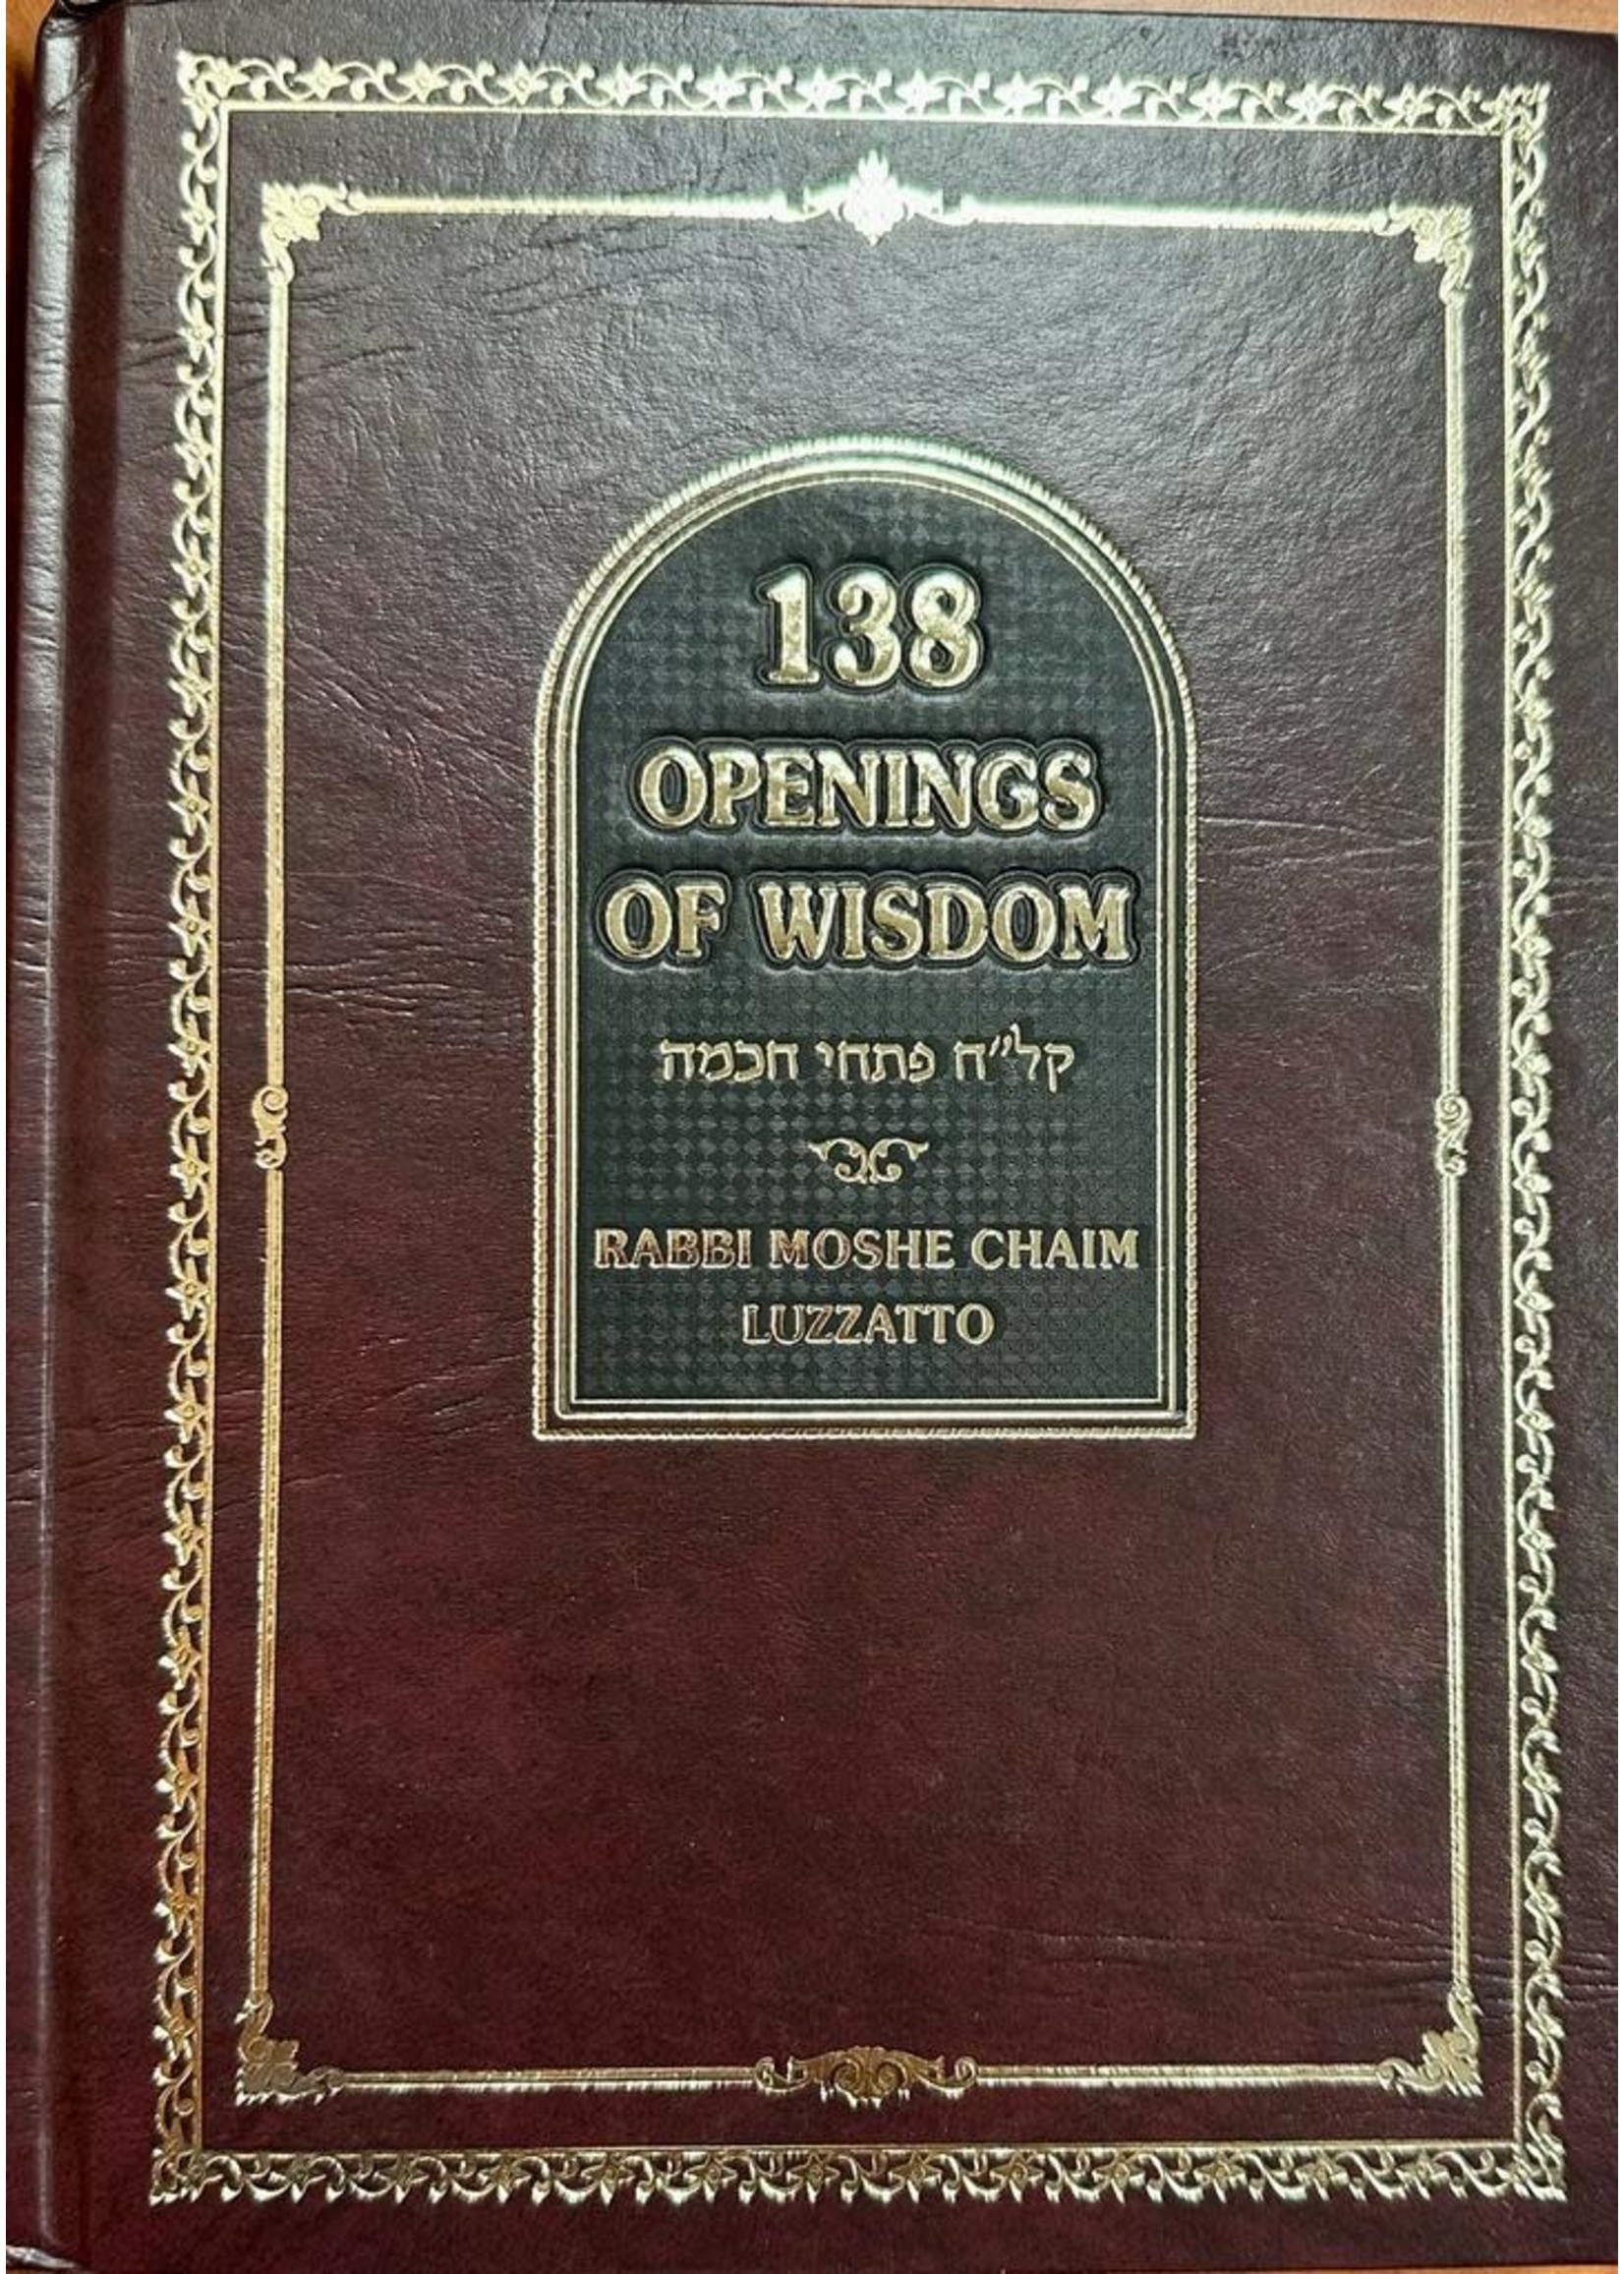 138 OPENINGS OF WISDOM